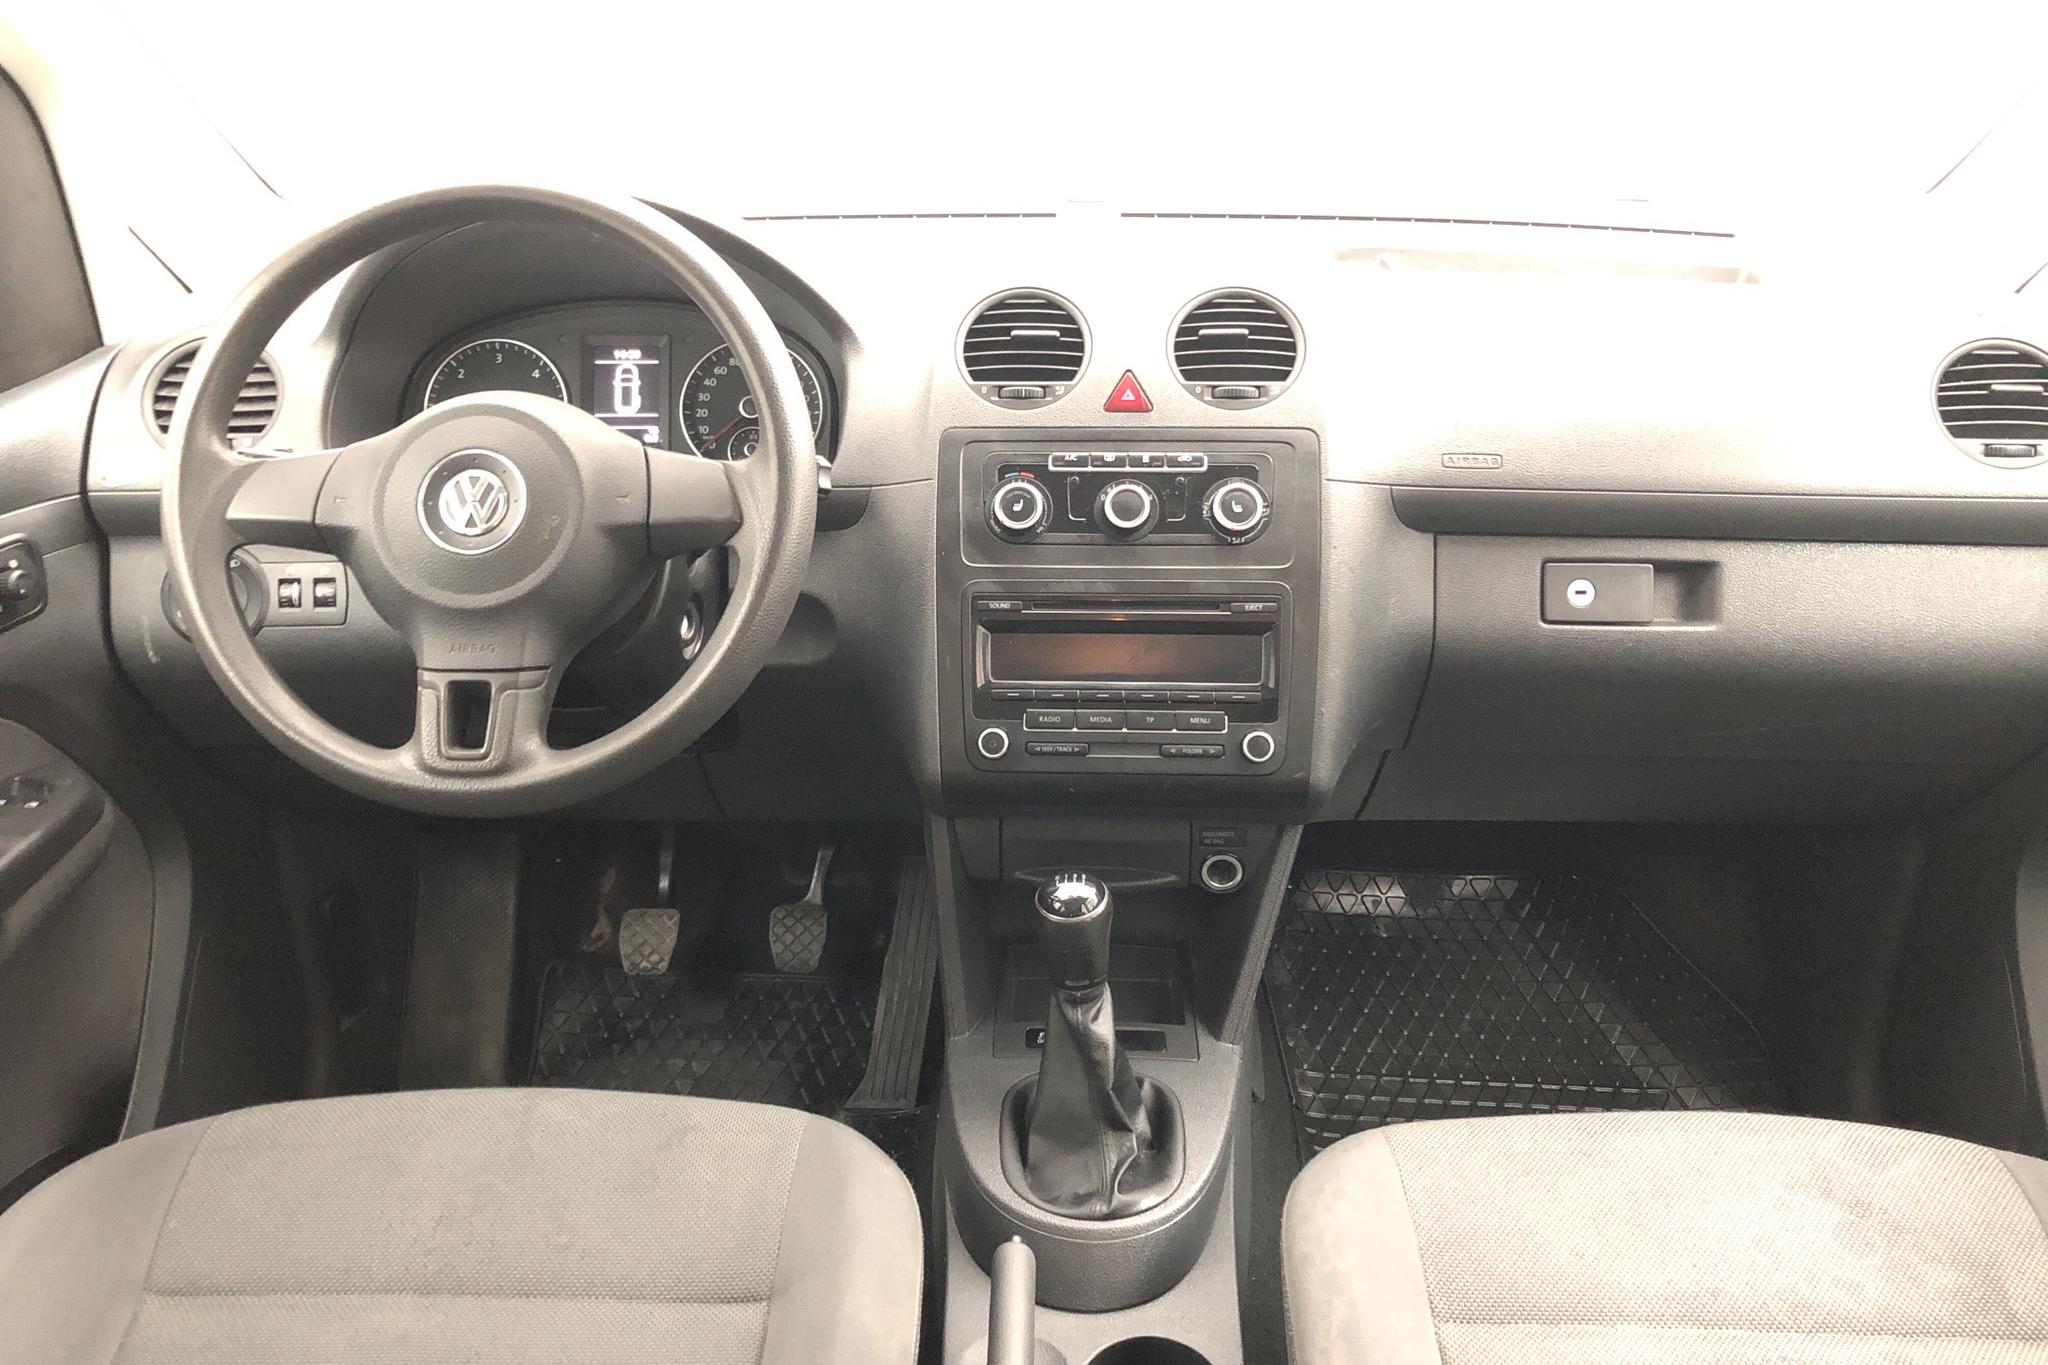 VW Caddy MPV 1.6 TDI (102hk) - 209 910 km - Manual - white - 2014